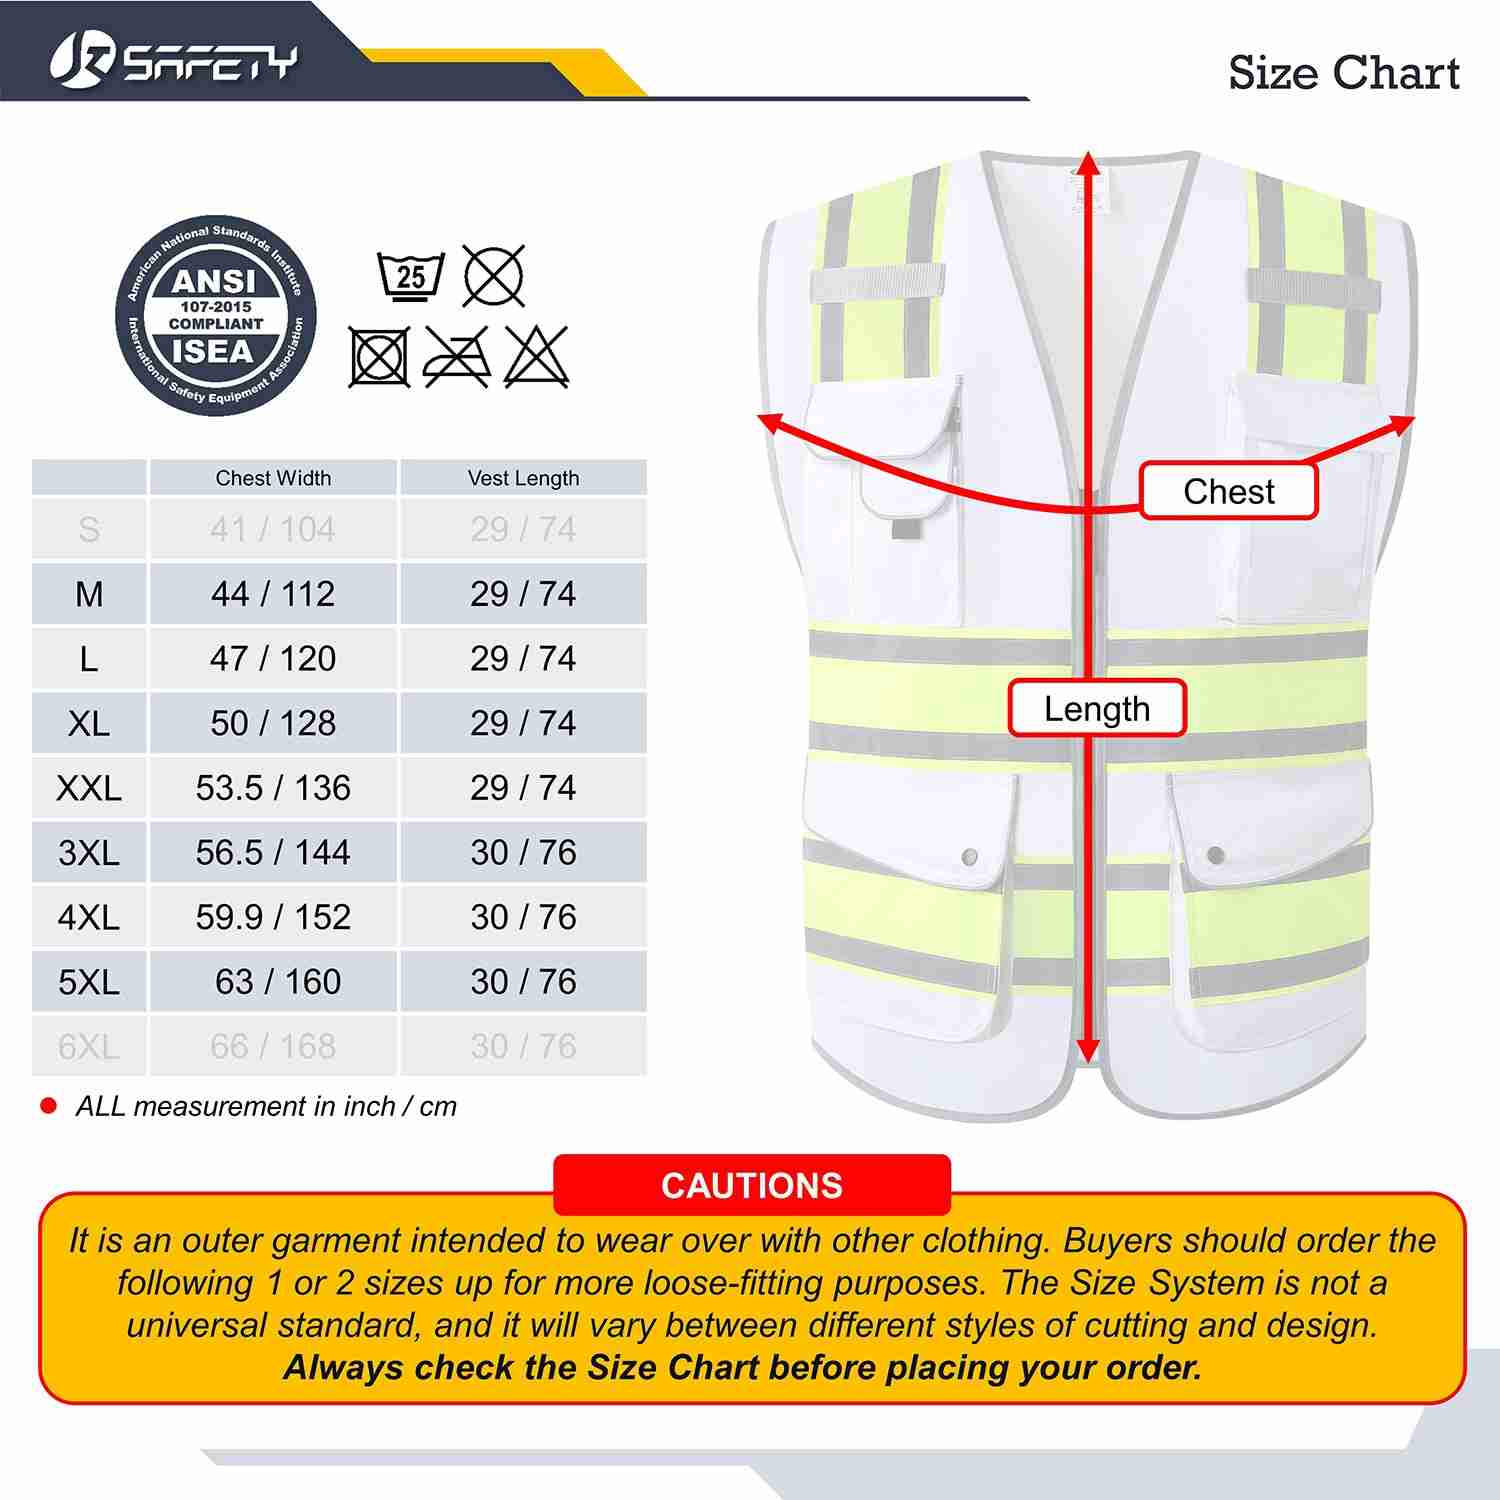 JKSafety 9 Pockets Hi-Vis Reflective Safety Vest, Two-Tone